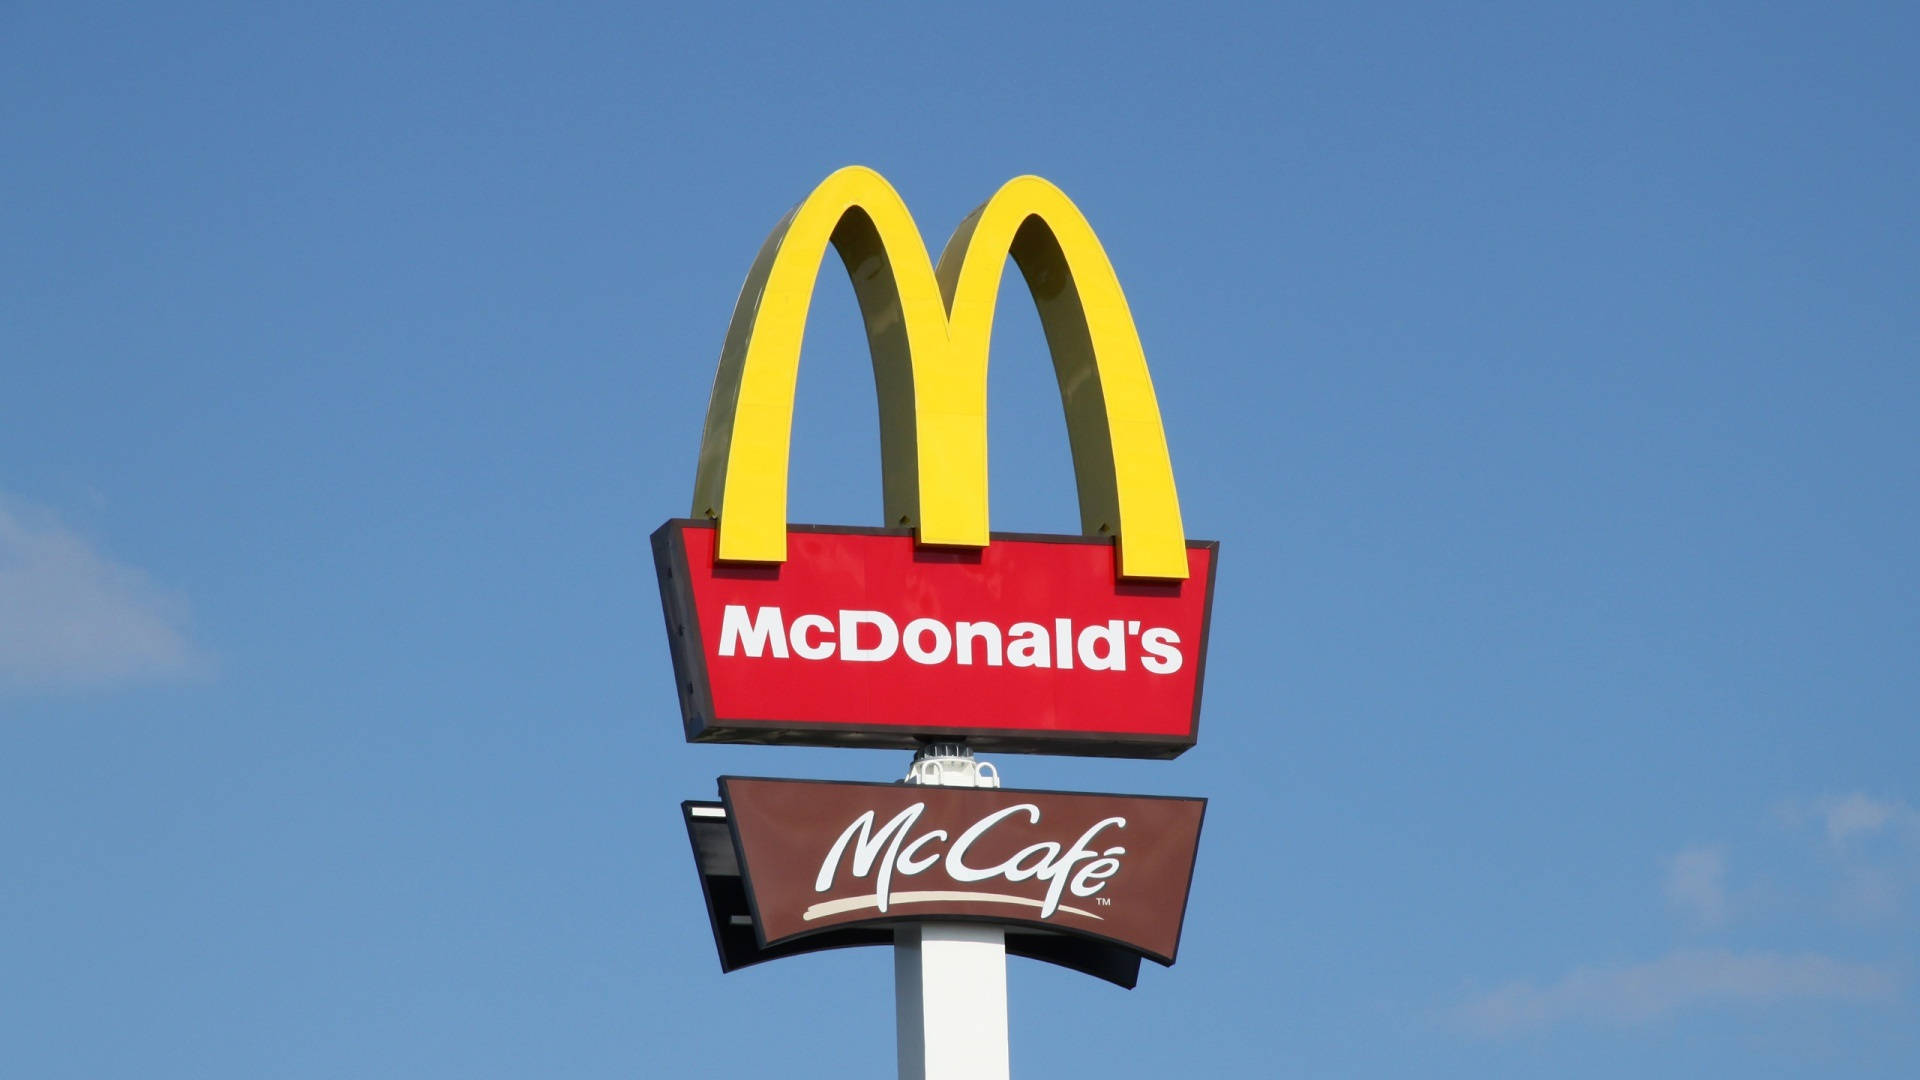 McDonald's McCafe Sign Wallpaper